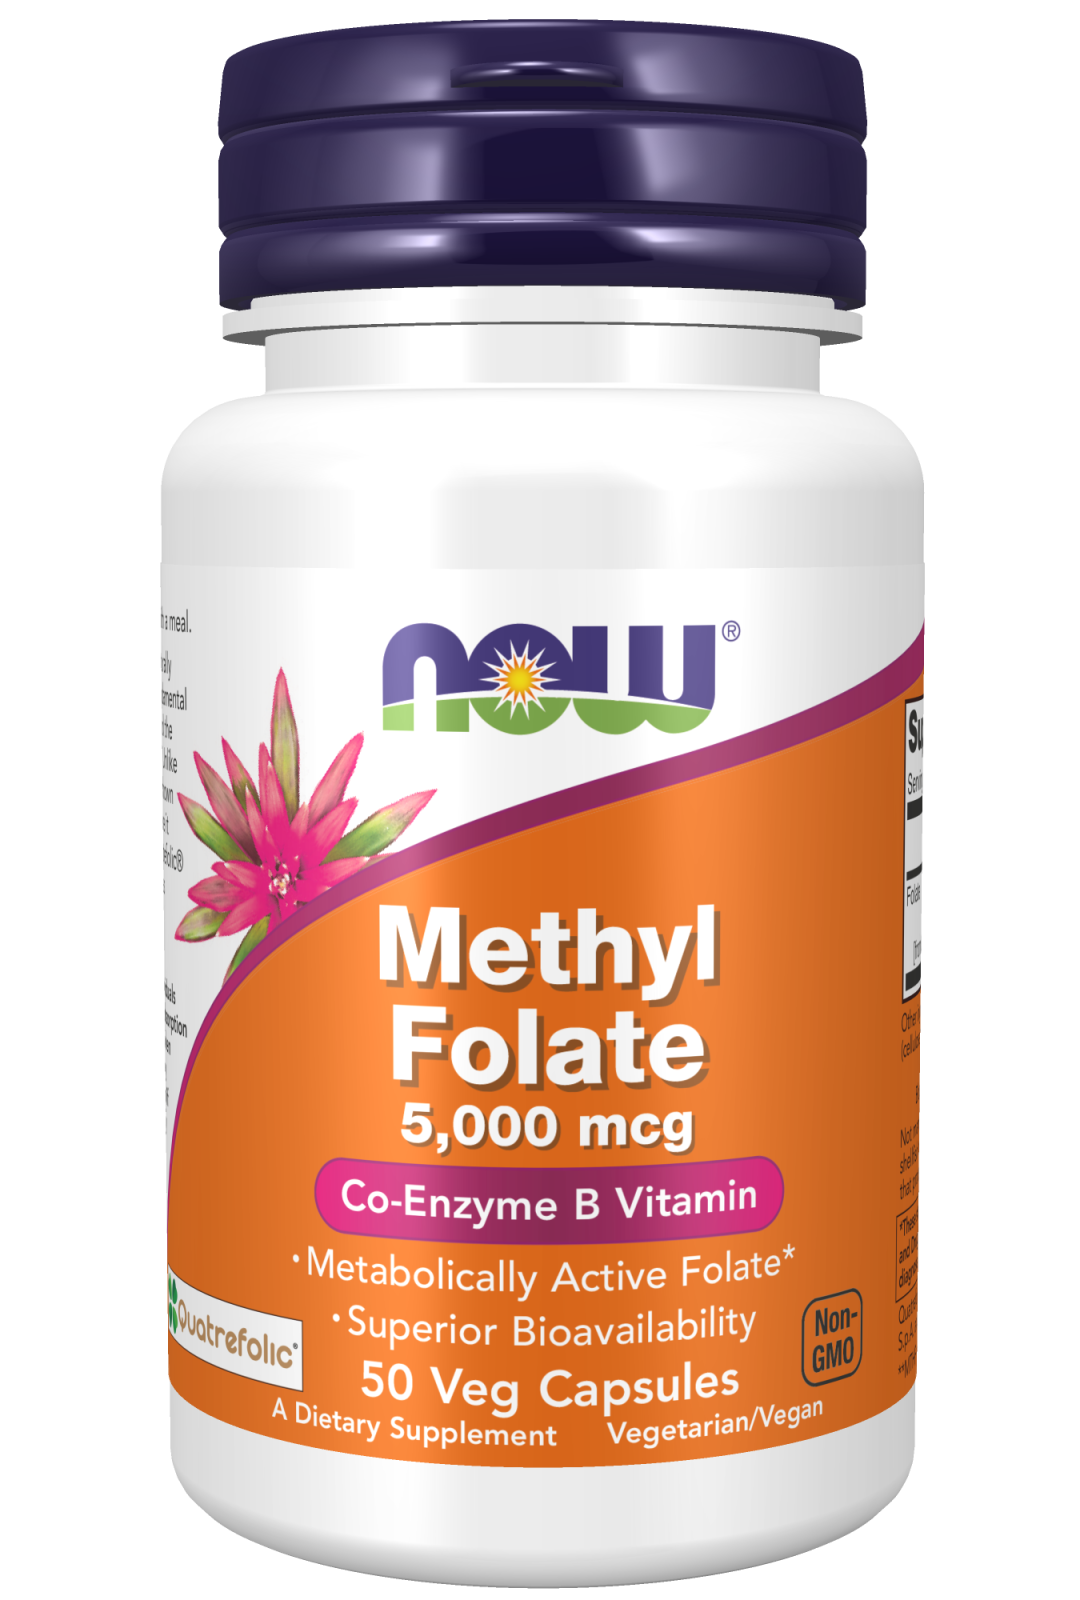 Methyl Folate 5000 mcg - 50 Veg Capsules bottle front